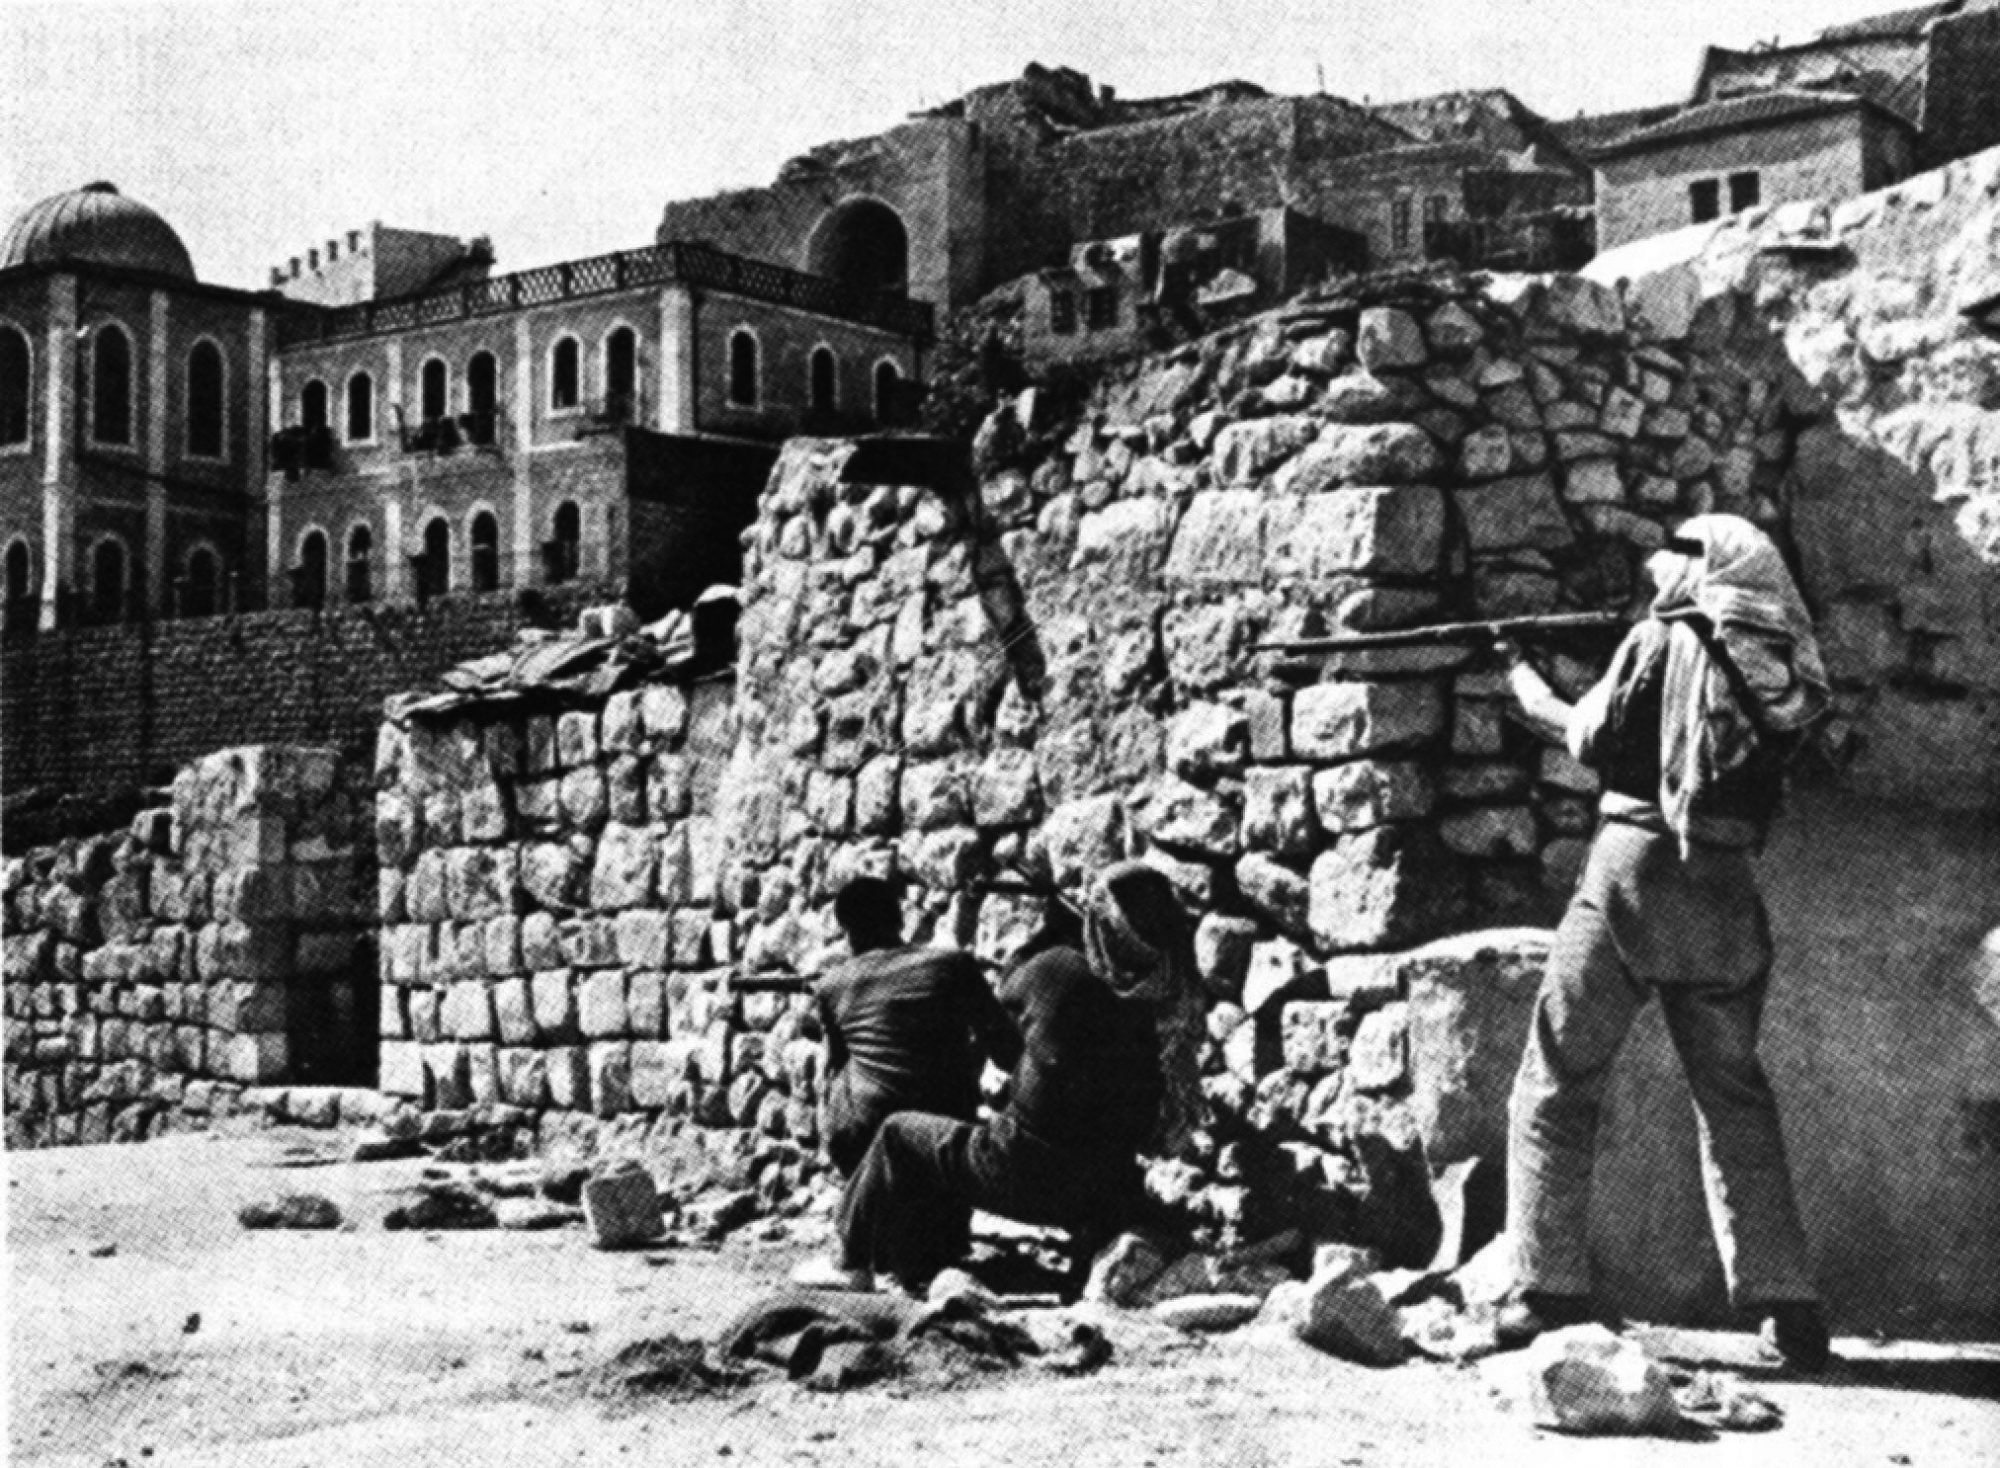 1948 - Arab-Israeli War I #1 (Flickr commons)